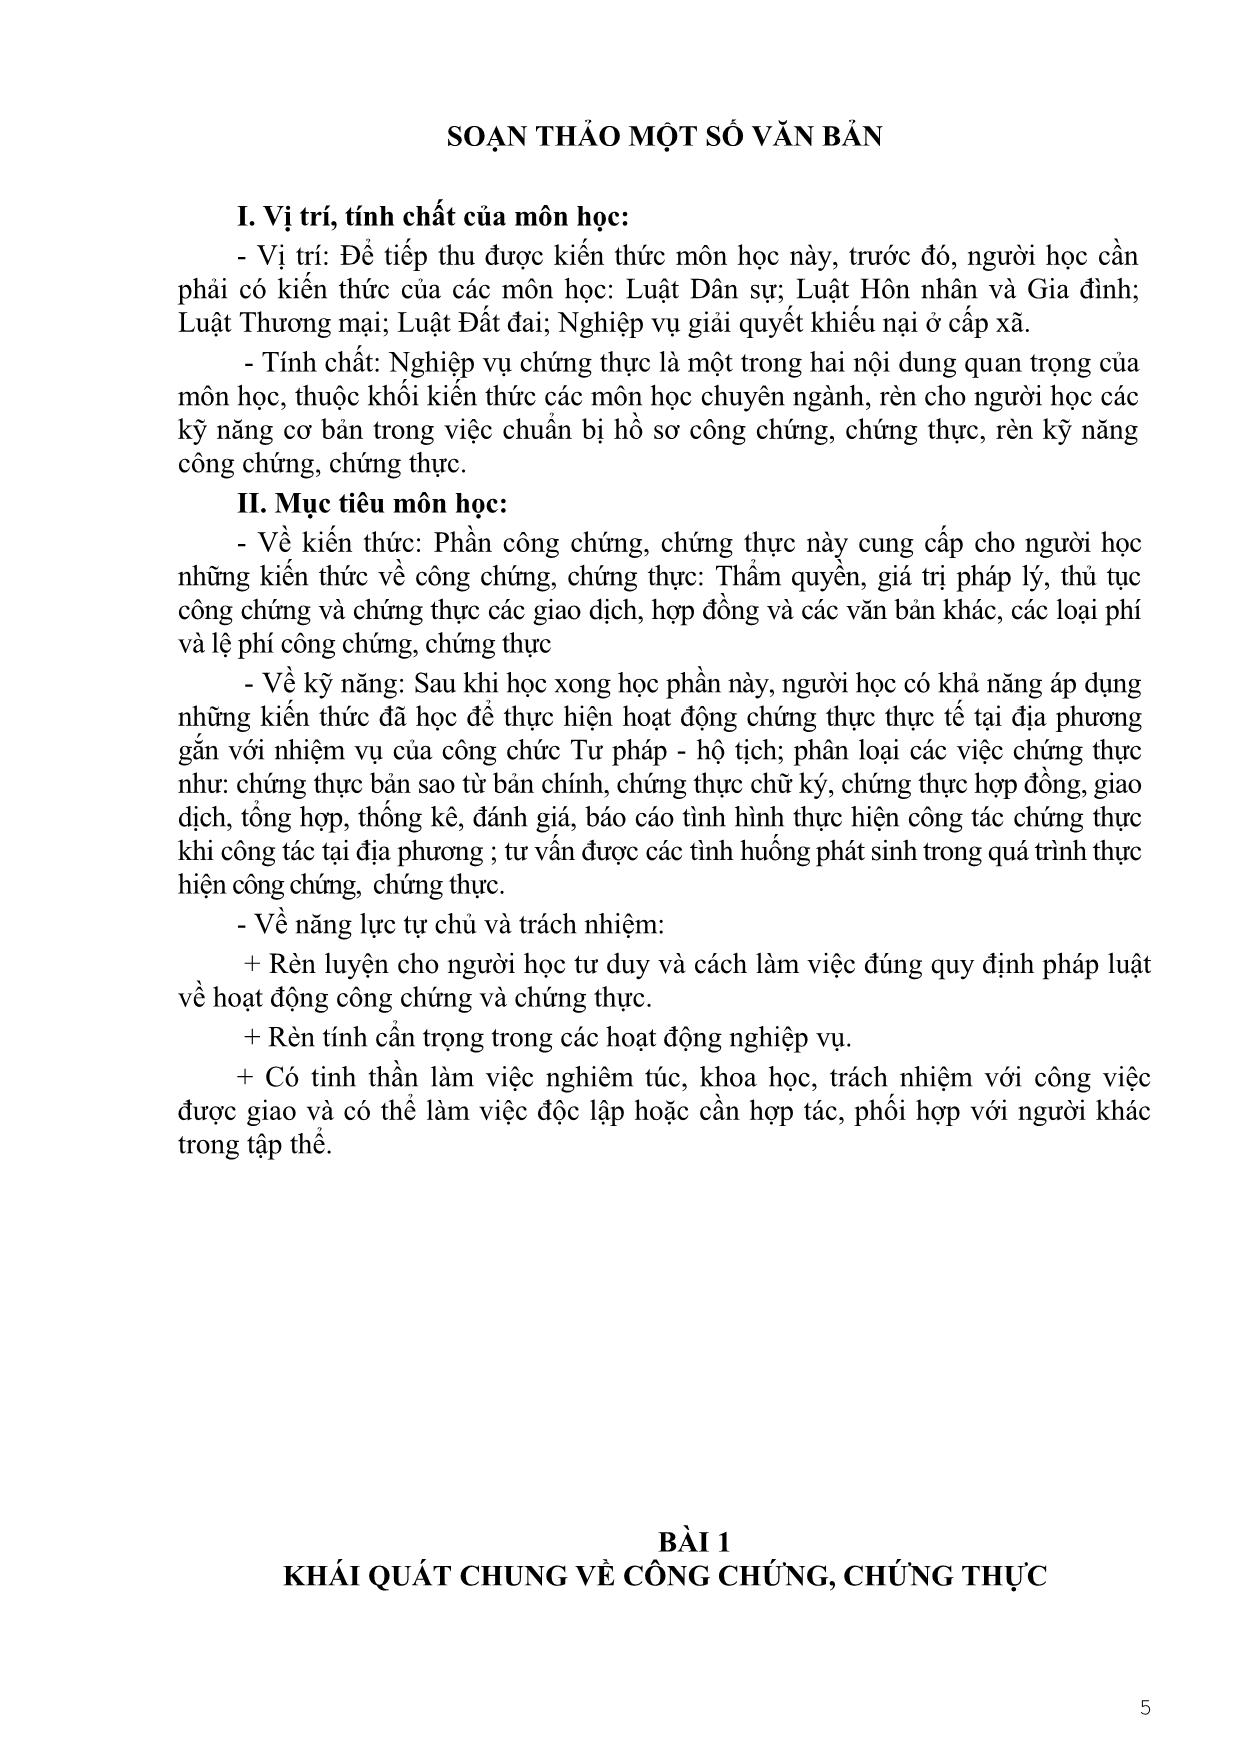 Giáo trình Soạn thảo văn bản trang 4